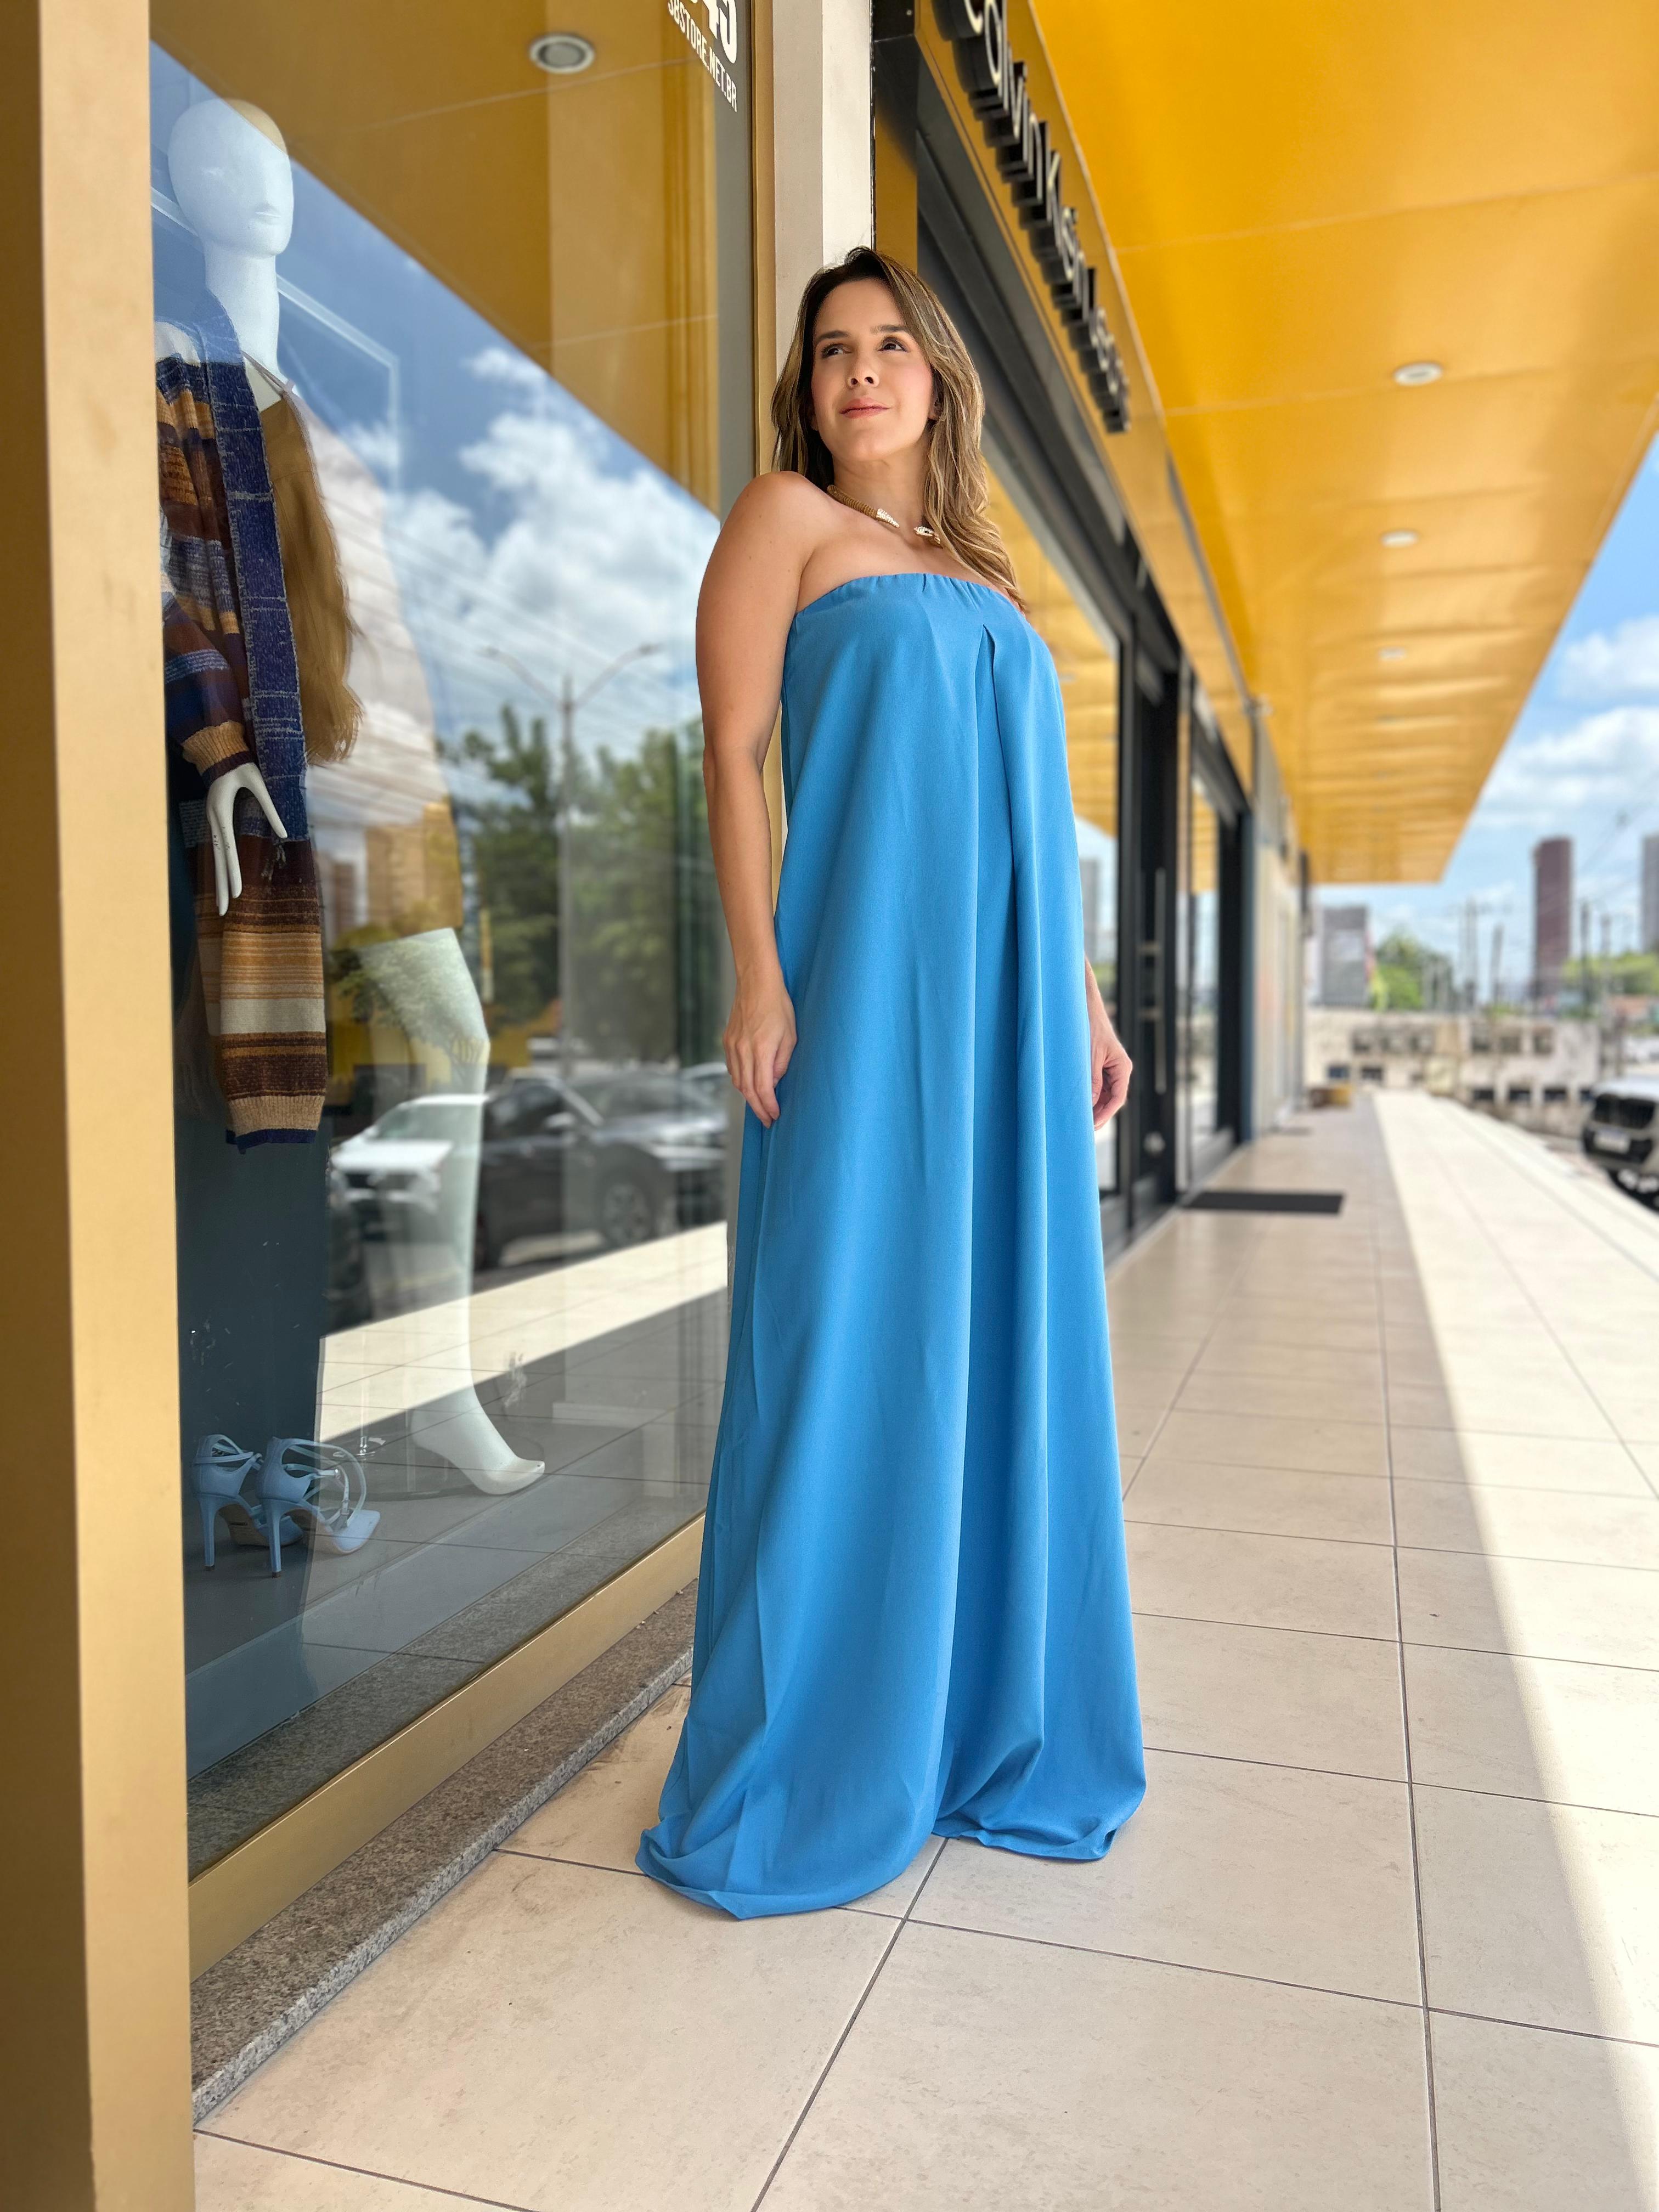 Vestido Tomara que Caia Carlota Costa Azul Claro - Imagem 1